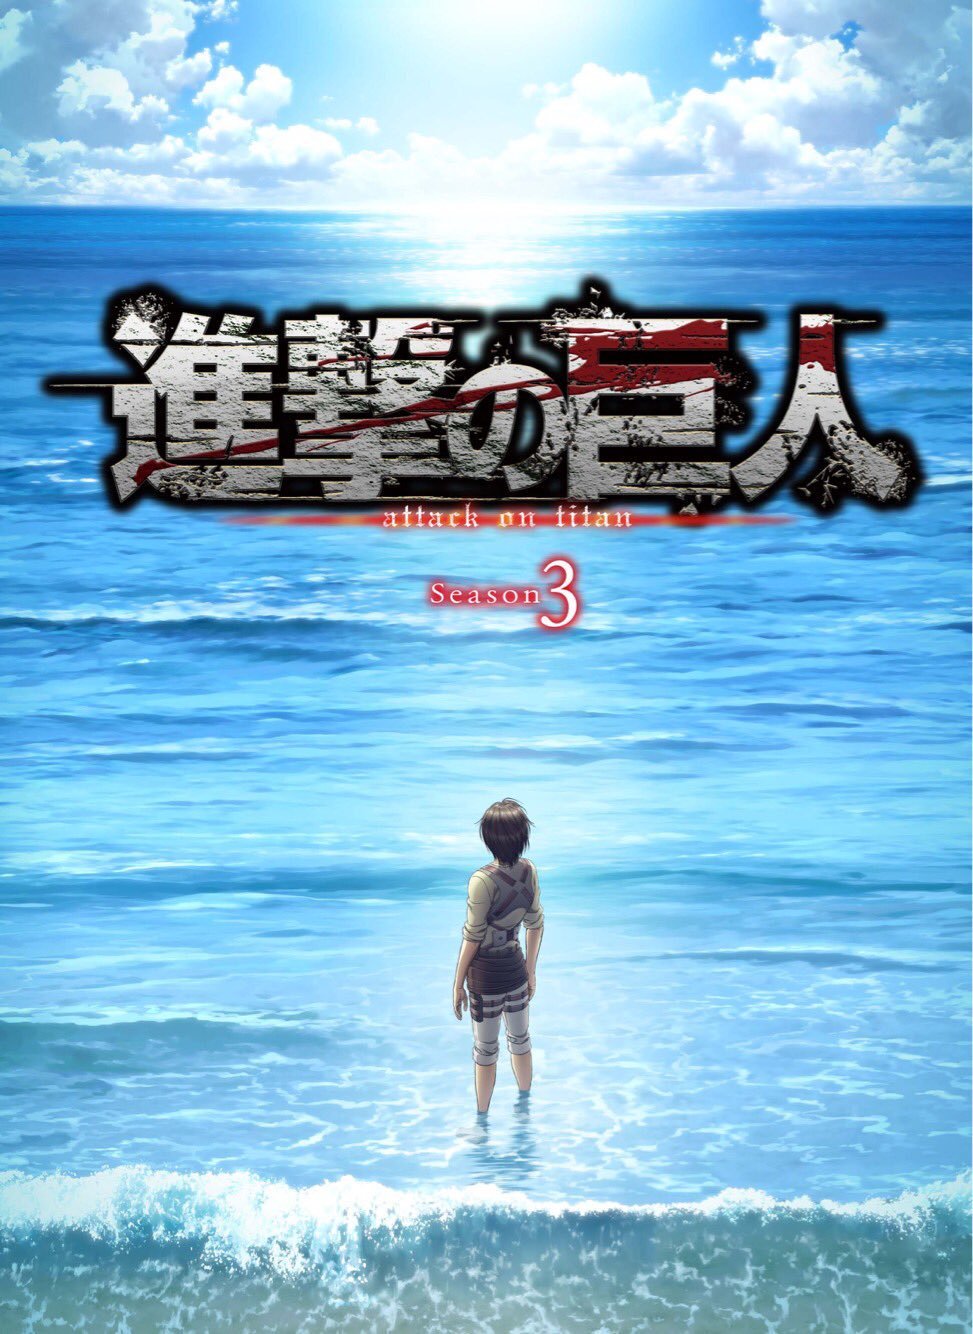 The âAttack on Titanâ S3 2nd-cour anime is listed as having 10 episodes (#50-59). Itâll premiere on April 28th.